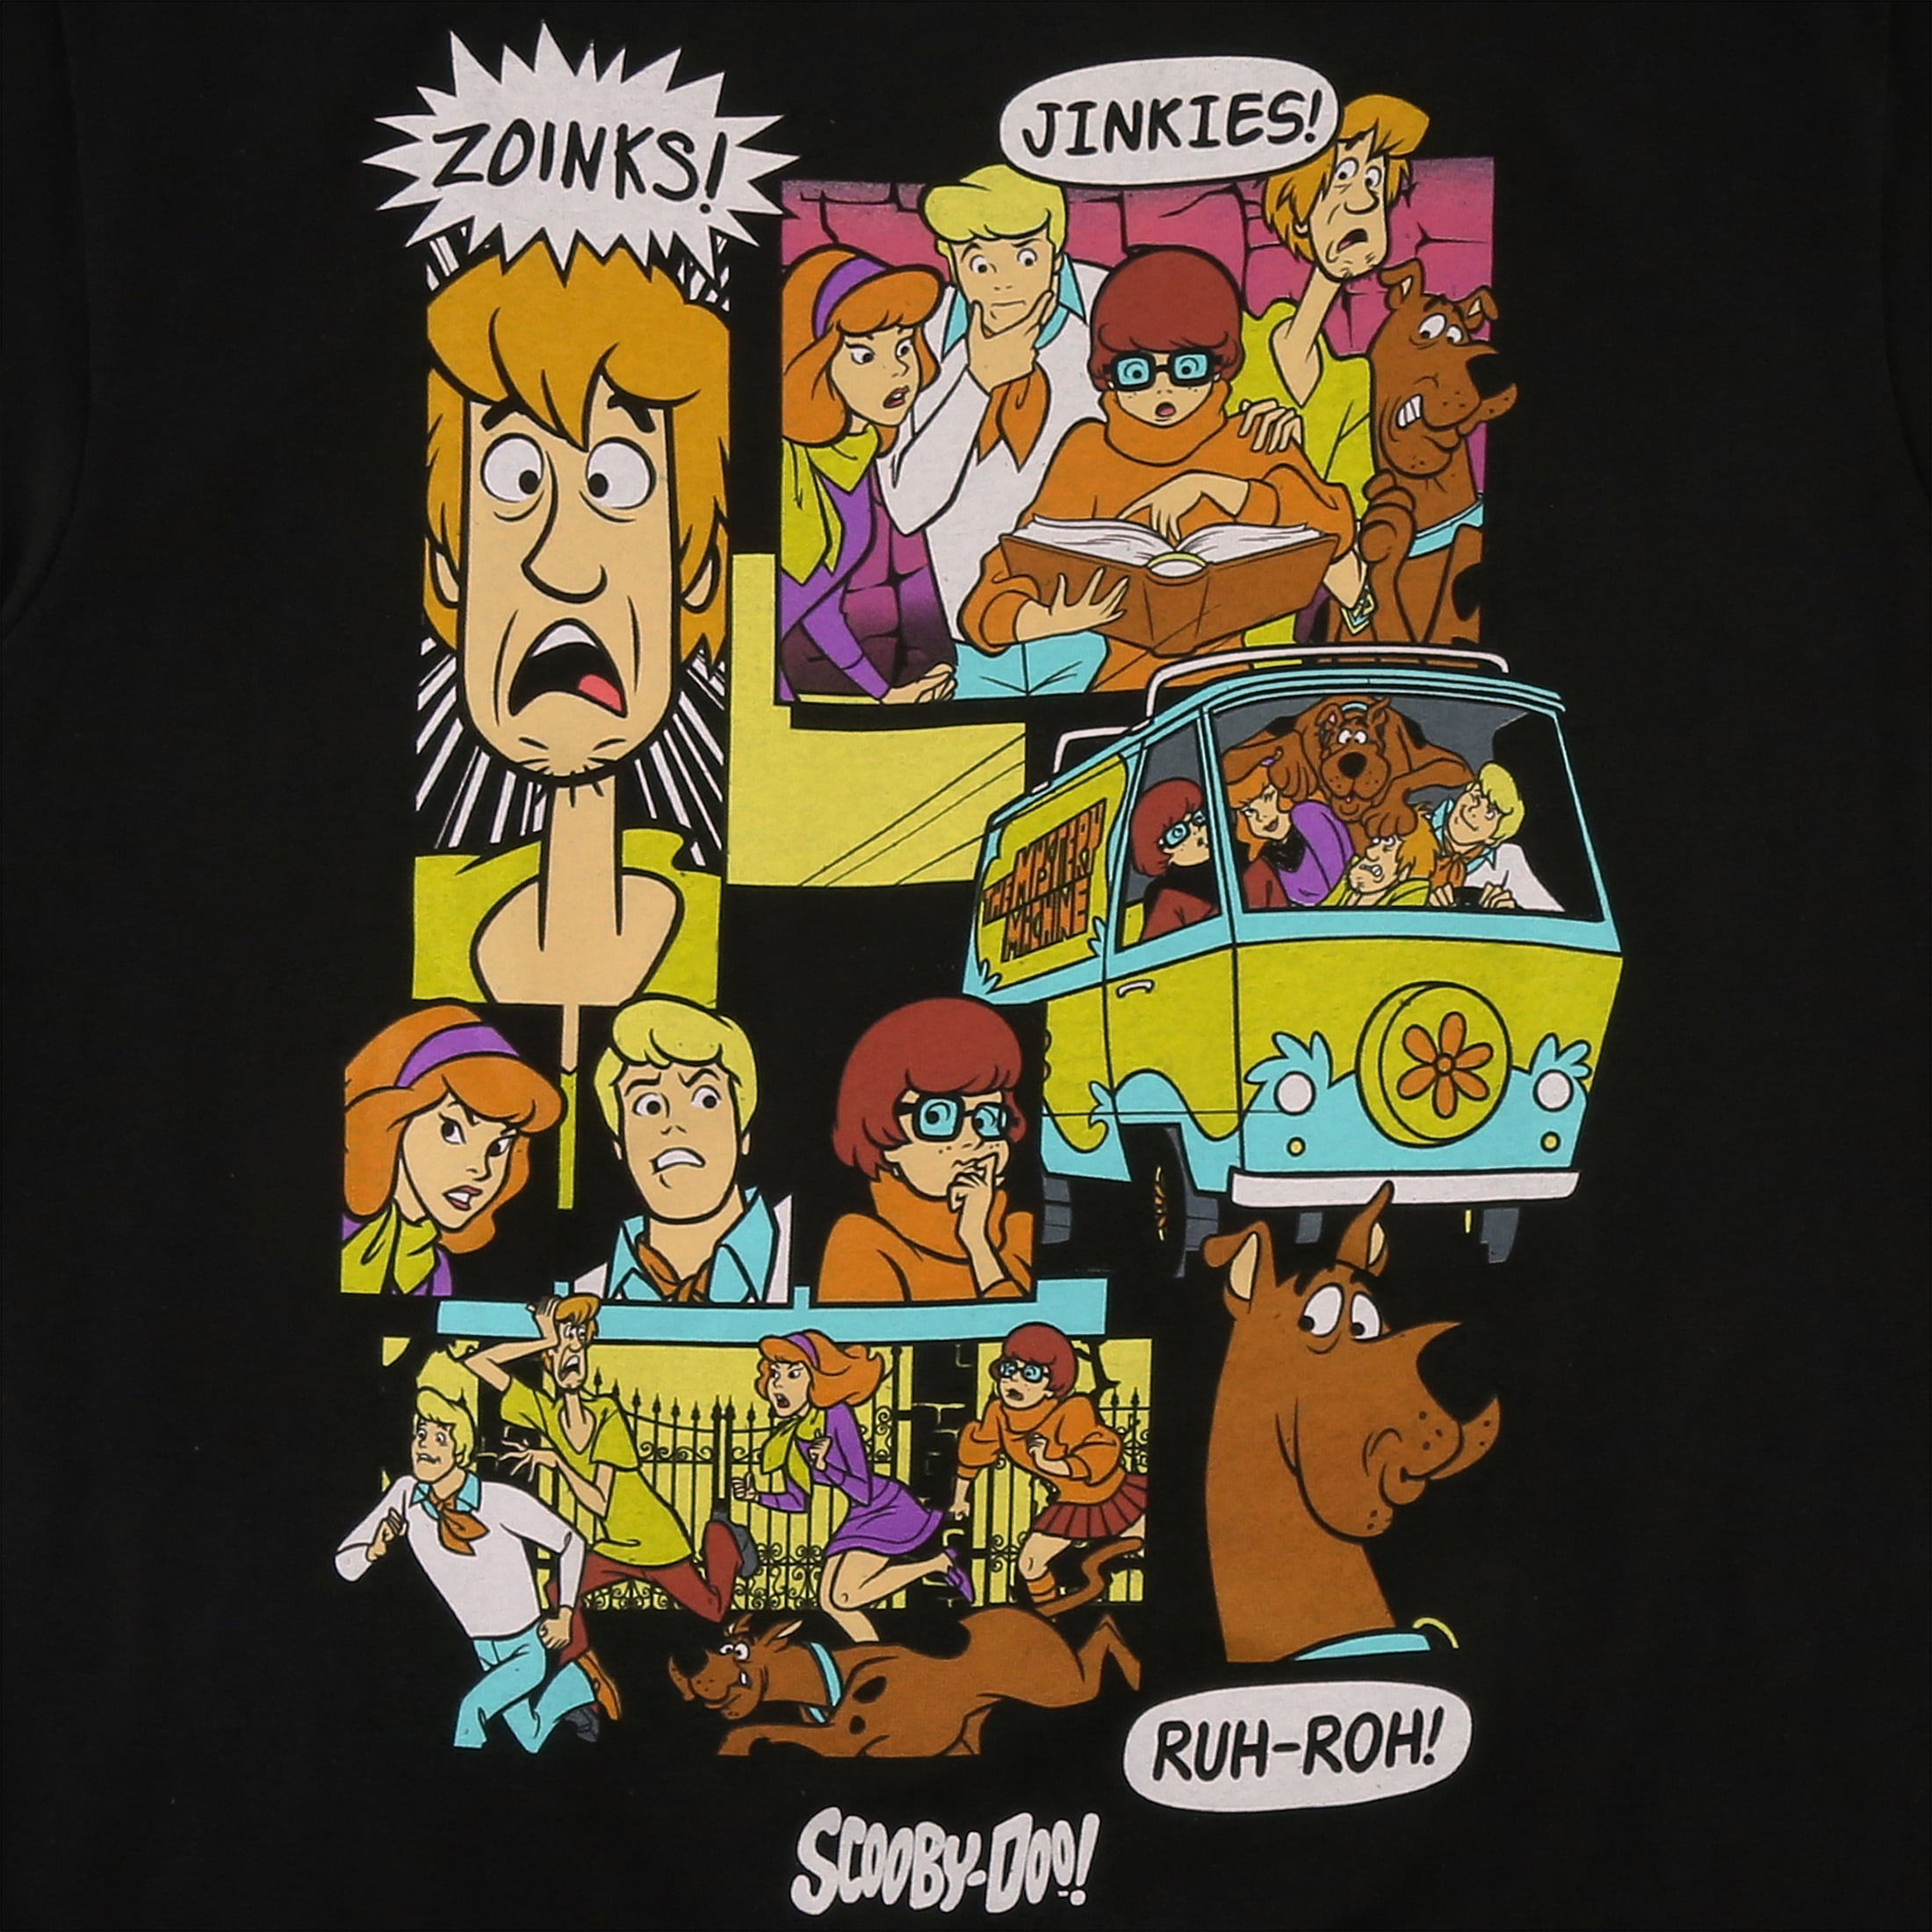 Scooby Doo Apocalypse Funny Cartoon Movie Polo Shirts - Peto Rugs